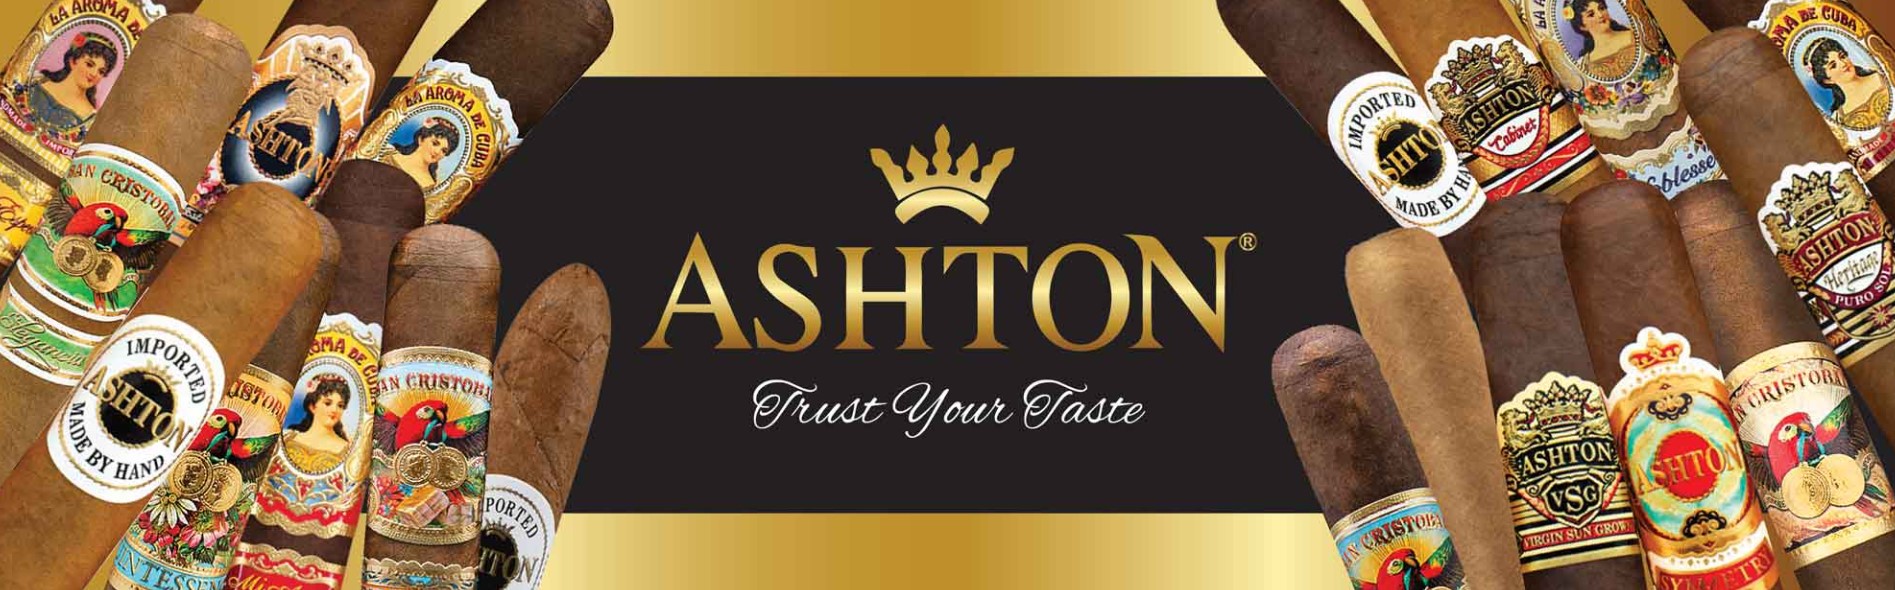 Ashton Cigars – Brand Overview 1